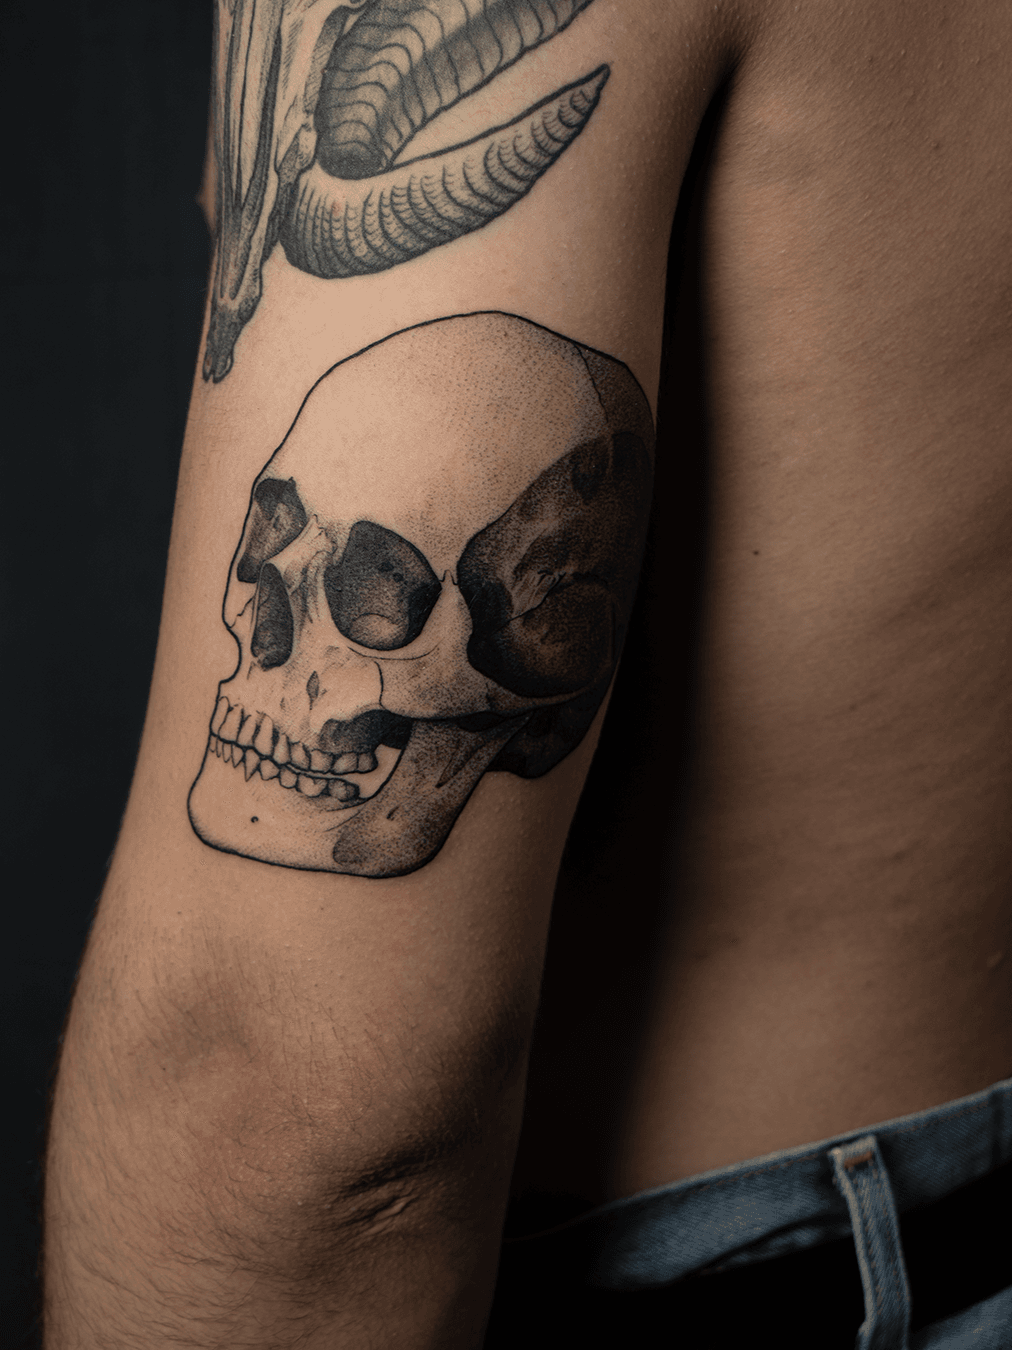 Tattoo uploaded by Pau Blackashes • #skull #skulltattoo #blackwork  #BlackworkTattoos #Spain #illustrative • Tattoodo